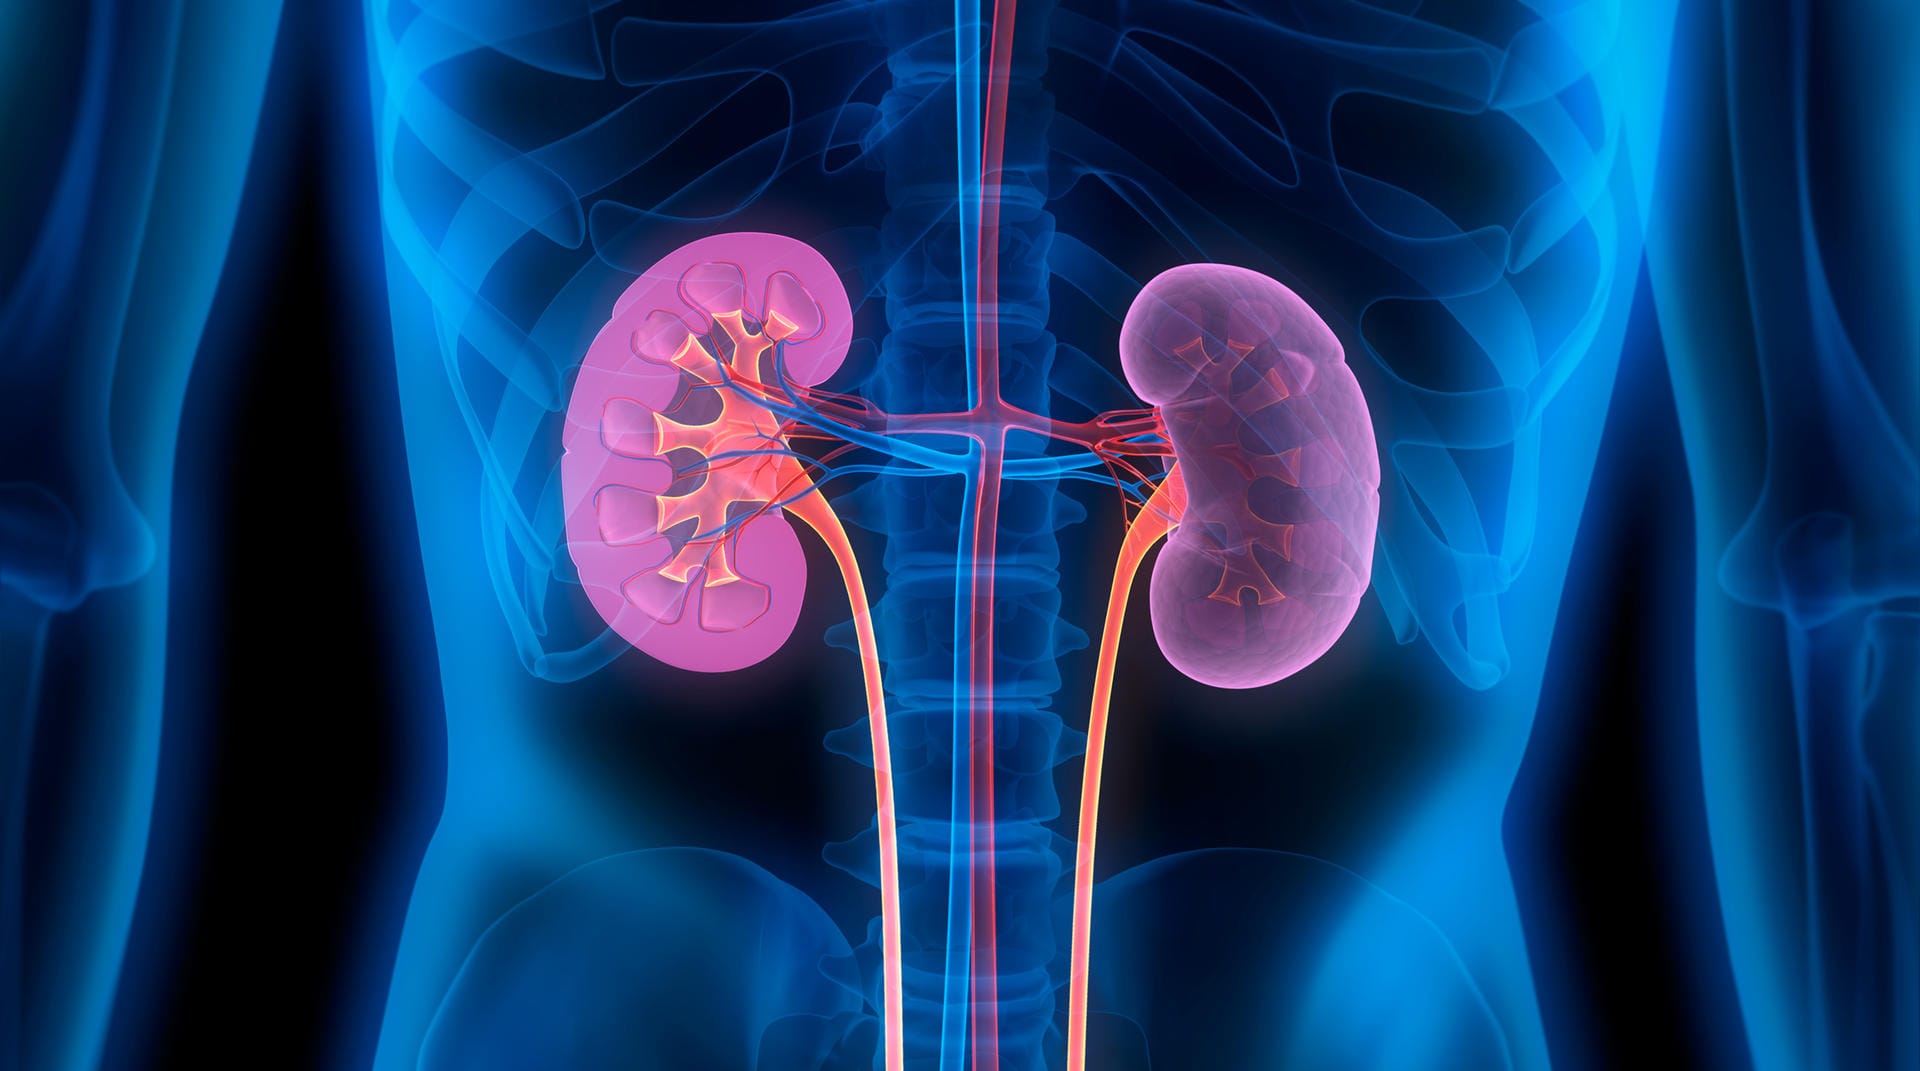 Bei vielen schwer erkrankten Covid-19-Patienten werden auch die Nieren geschädigt. Einer Studie des Universitätsklinikums Hamburg-Eppendorf (UKE) zufolge ist die Niere sogar nach der Lunge das am zweithäufigsten betroffene Organ. Die Ursachen des Befalls werden noch erforscht.